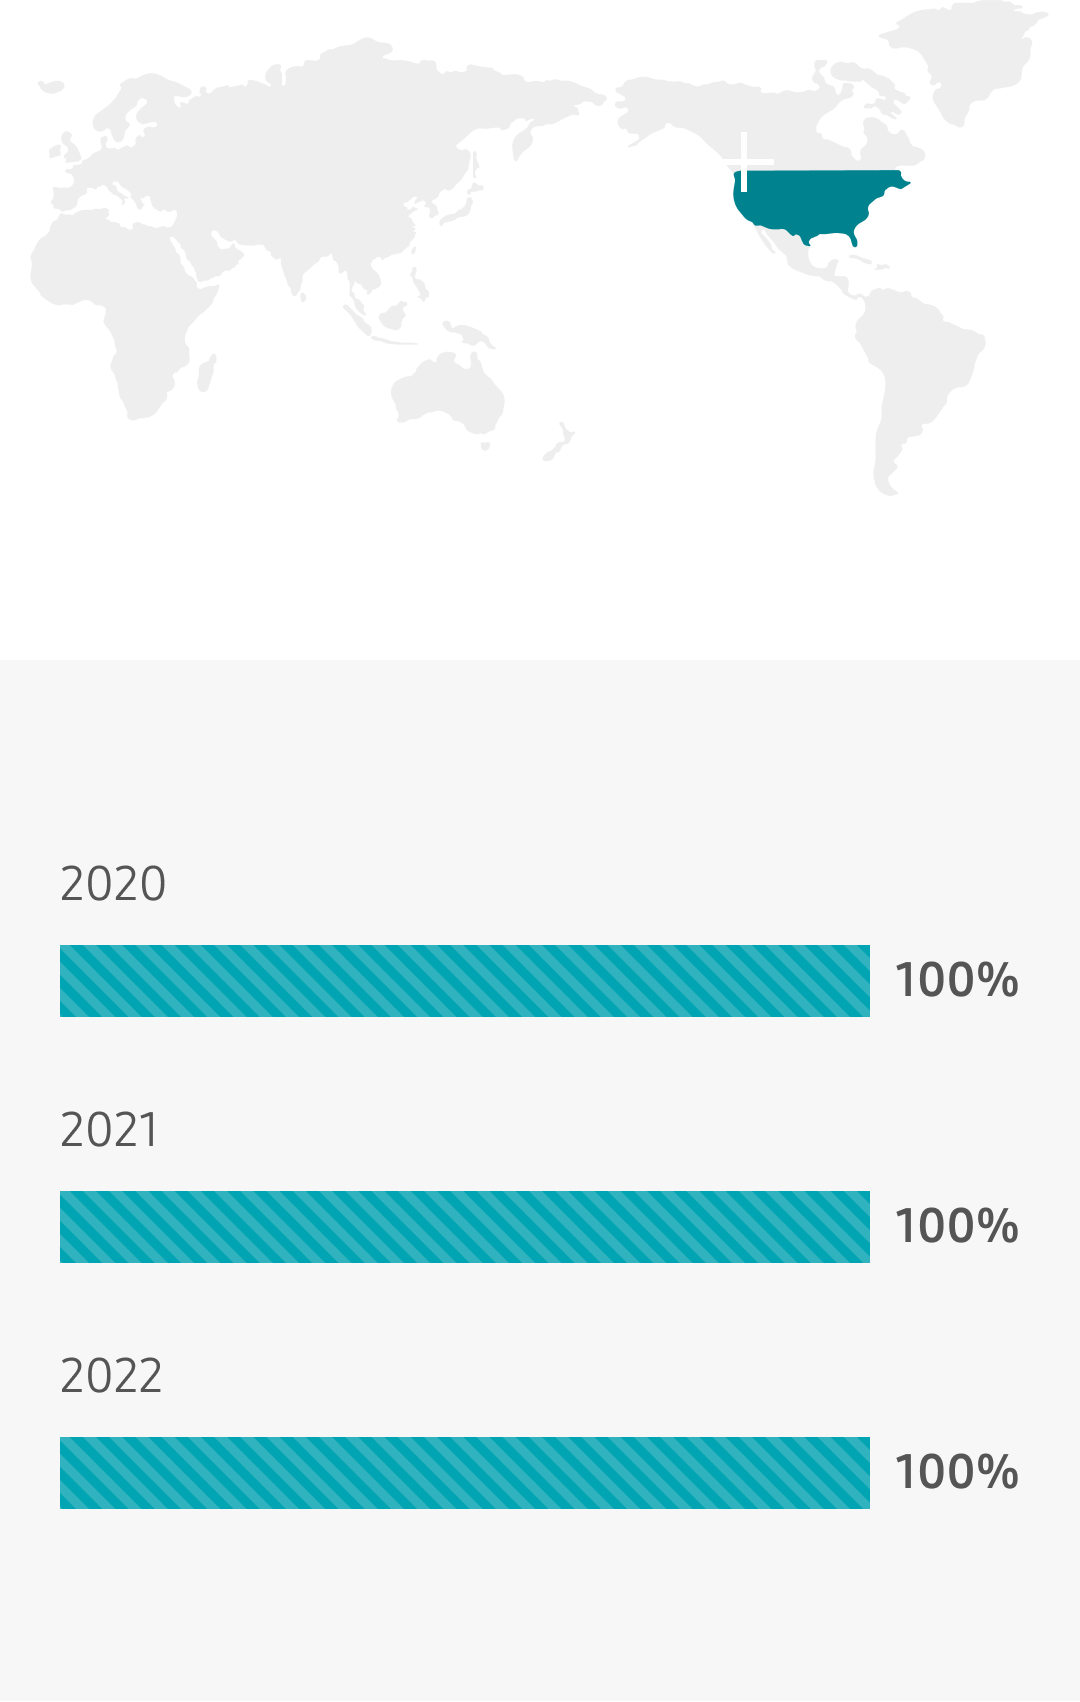 U.S. 2019 96%, 2020 100%, 2021 100%